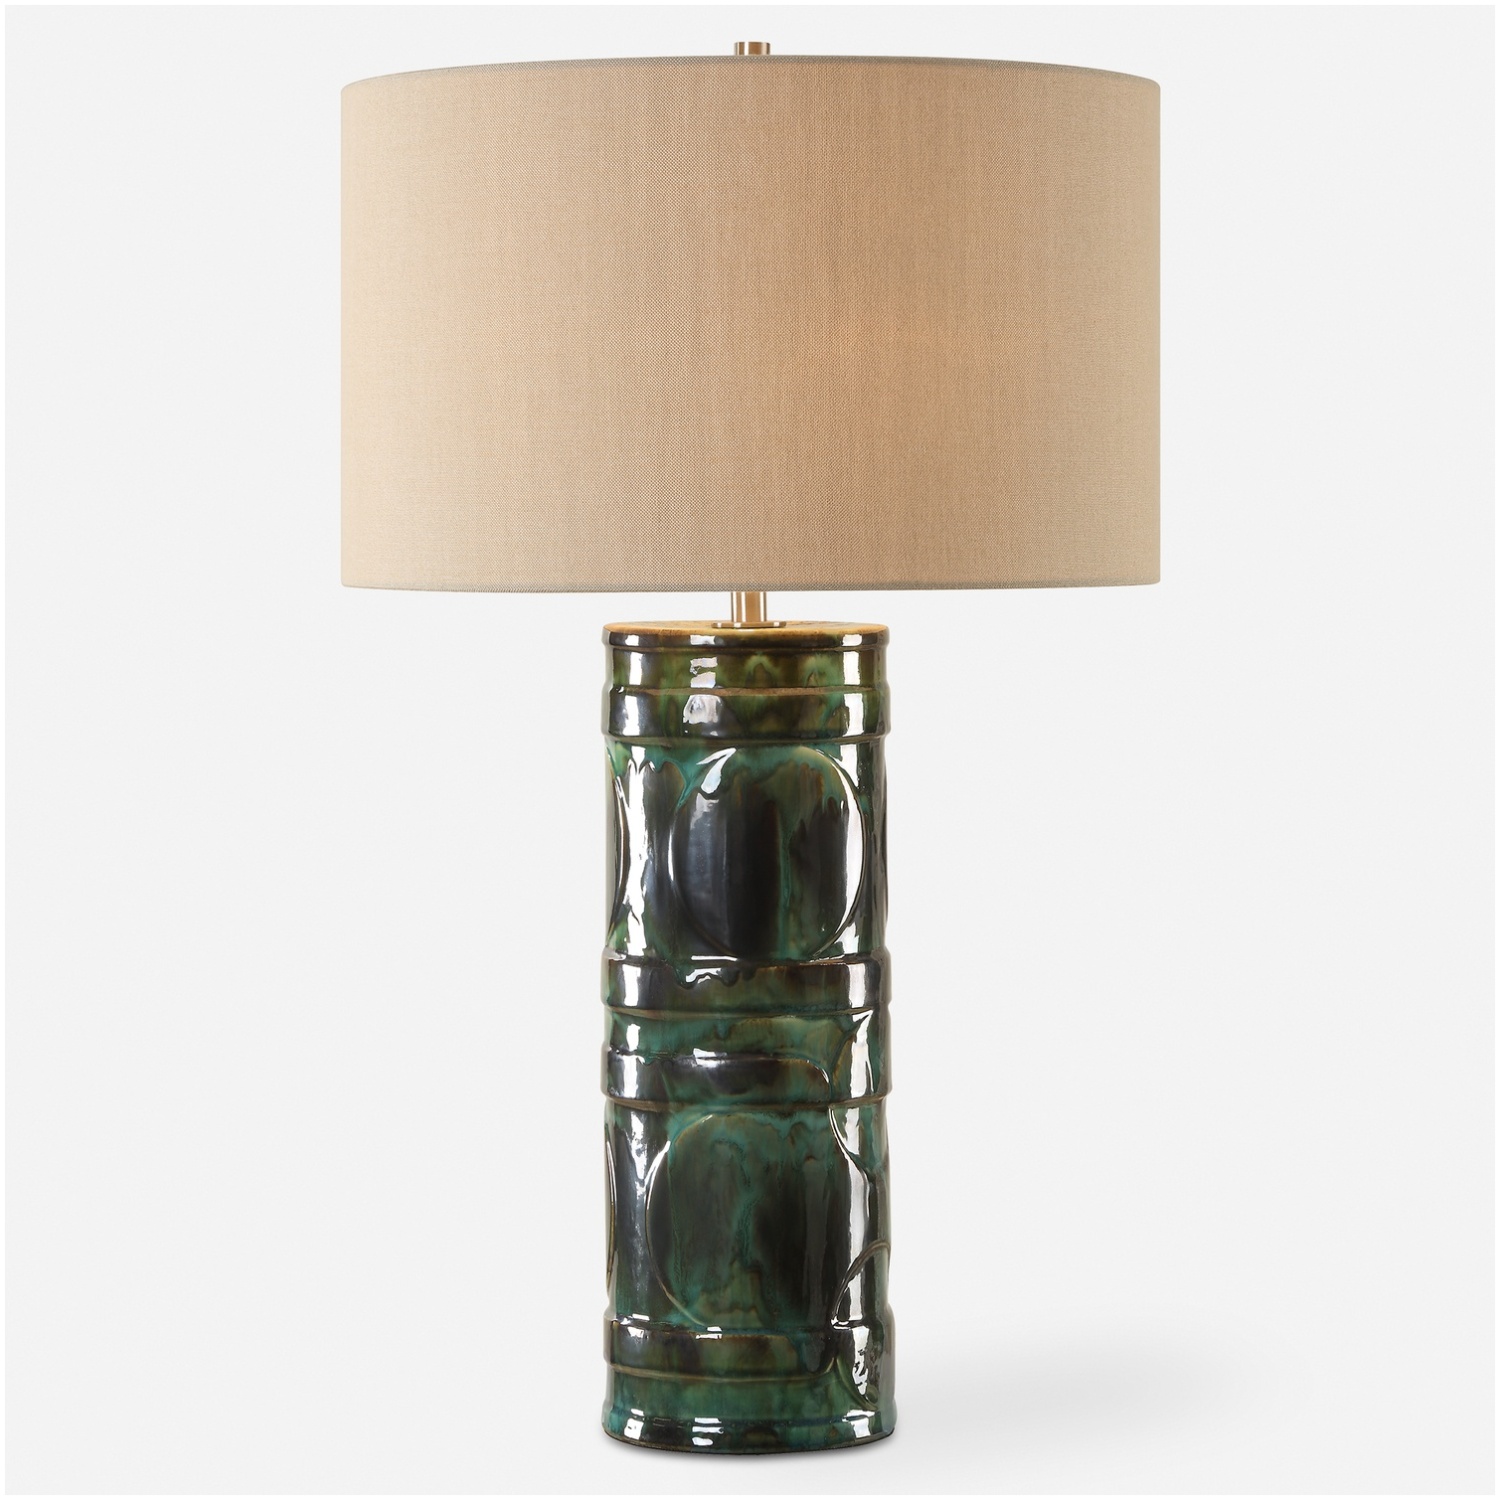 Loch-Green Glaze Table Lamp